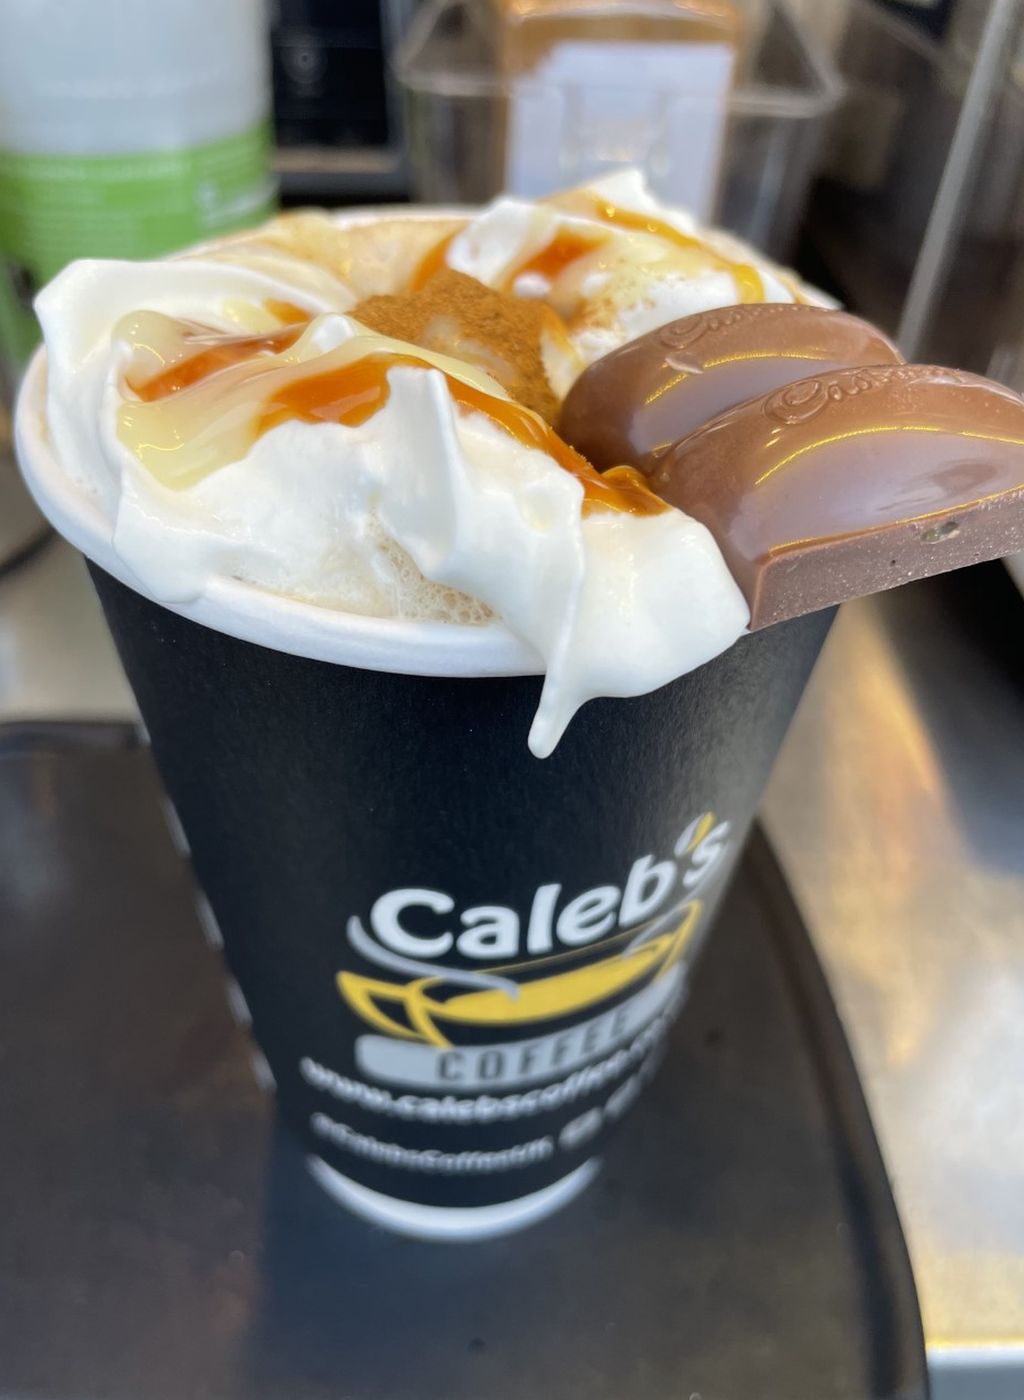 Caleb's coffee with chocolate